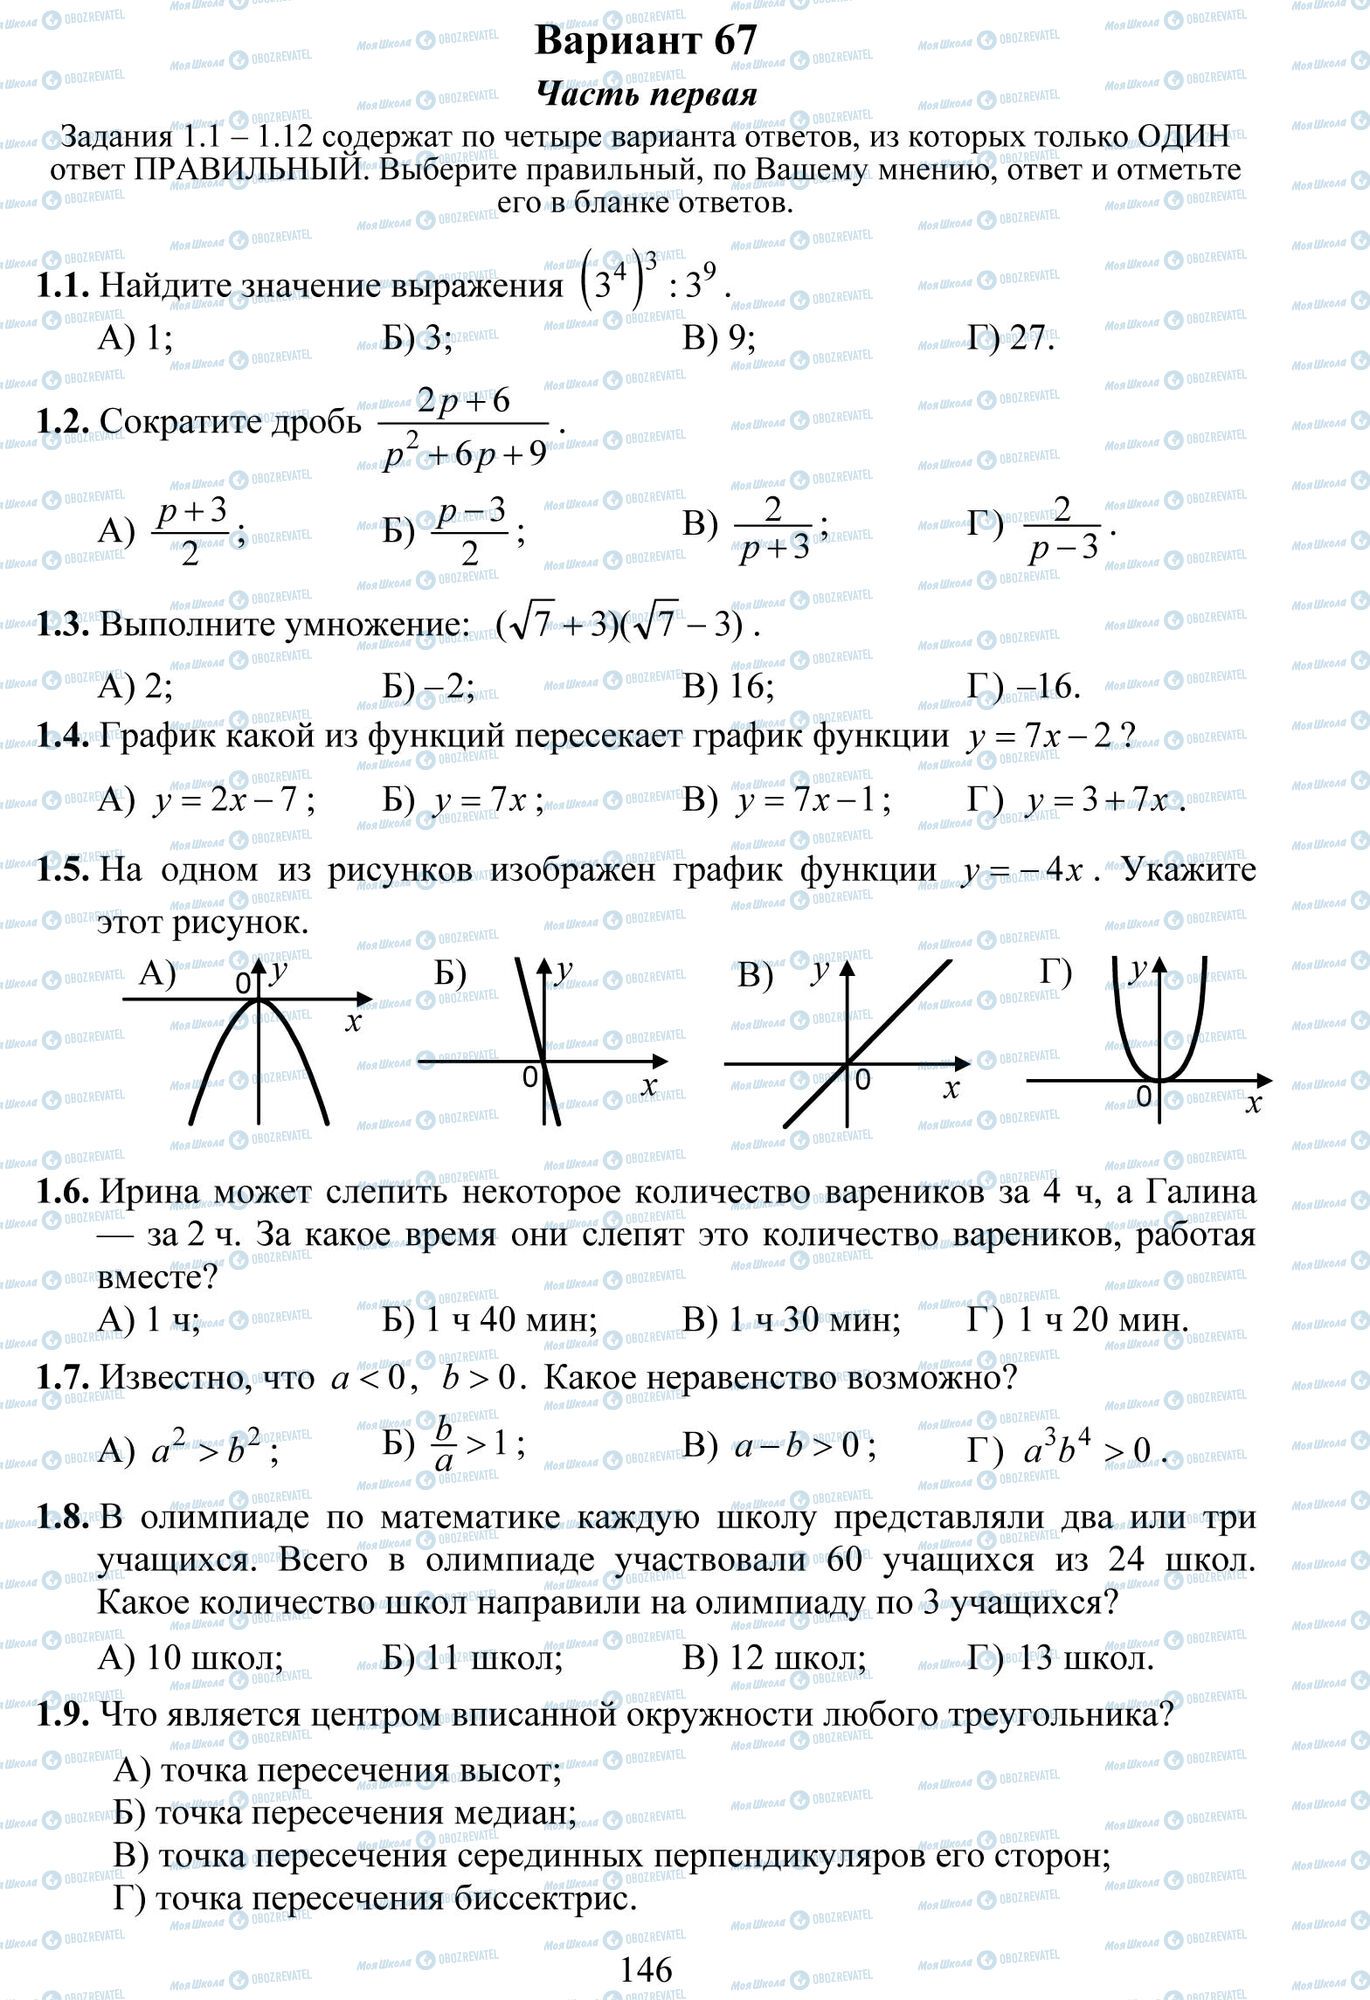 ДПА Математика 9 класс страница 1-9